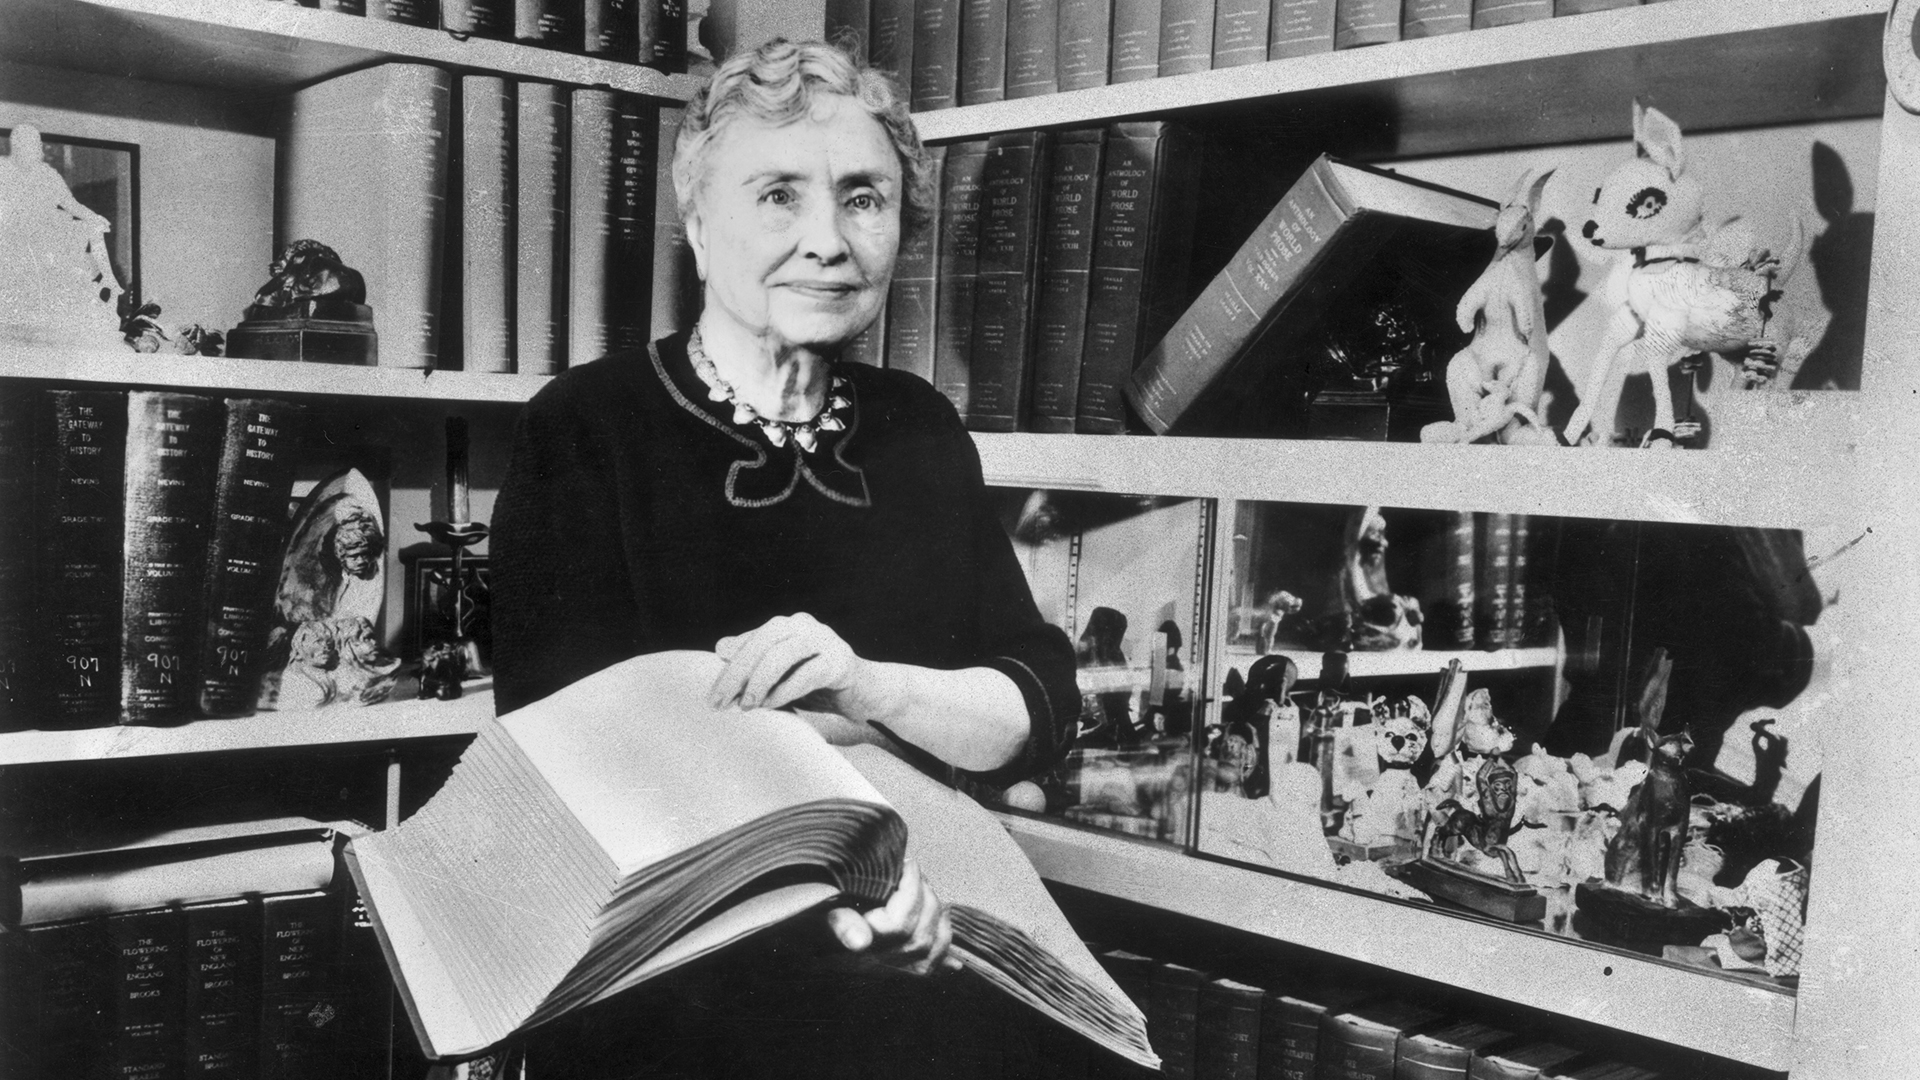 September 14, 1964: Helen Keller Received the Presidential Medal of Freedom